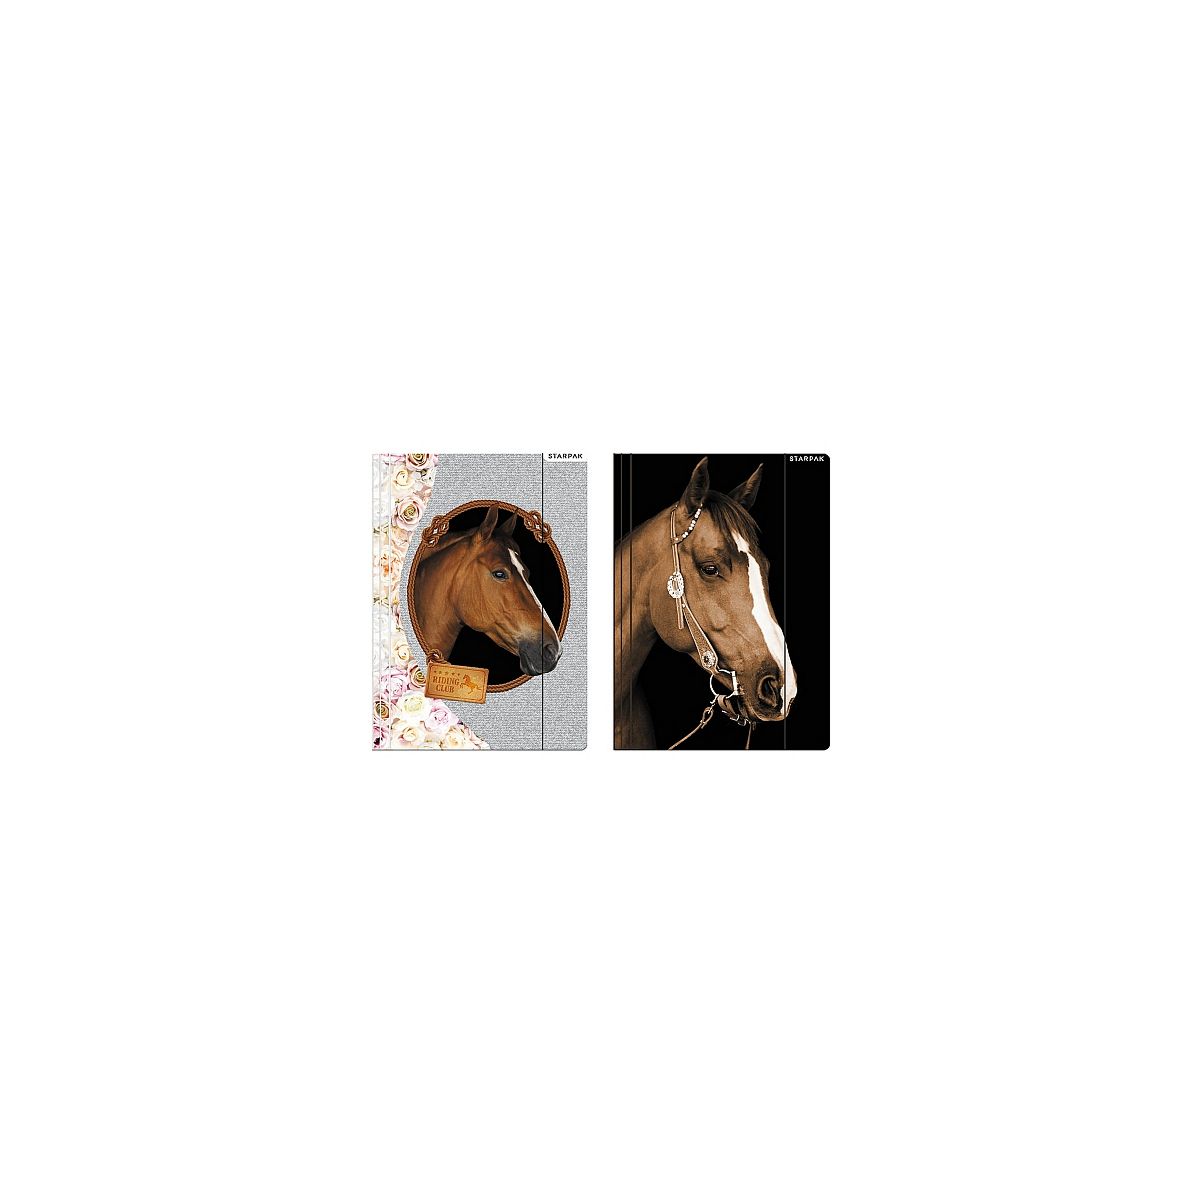 Teczka kartonowa na gumkę horses A4 mix Starpak (298952)